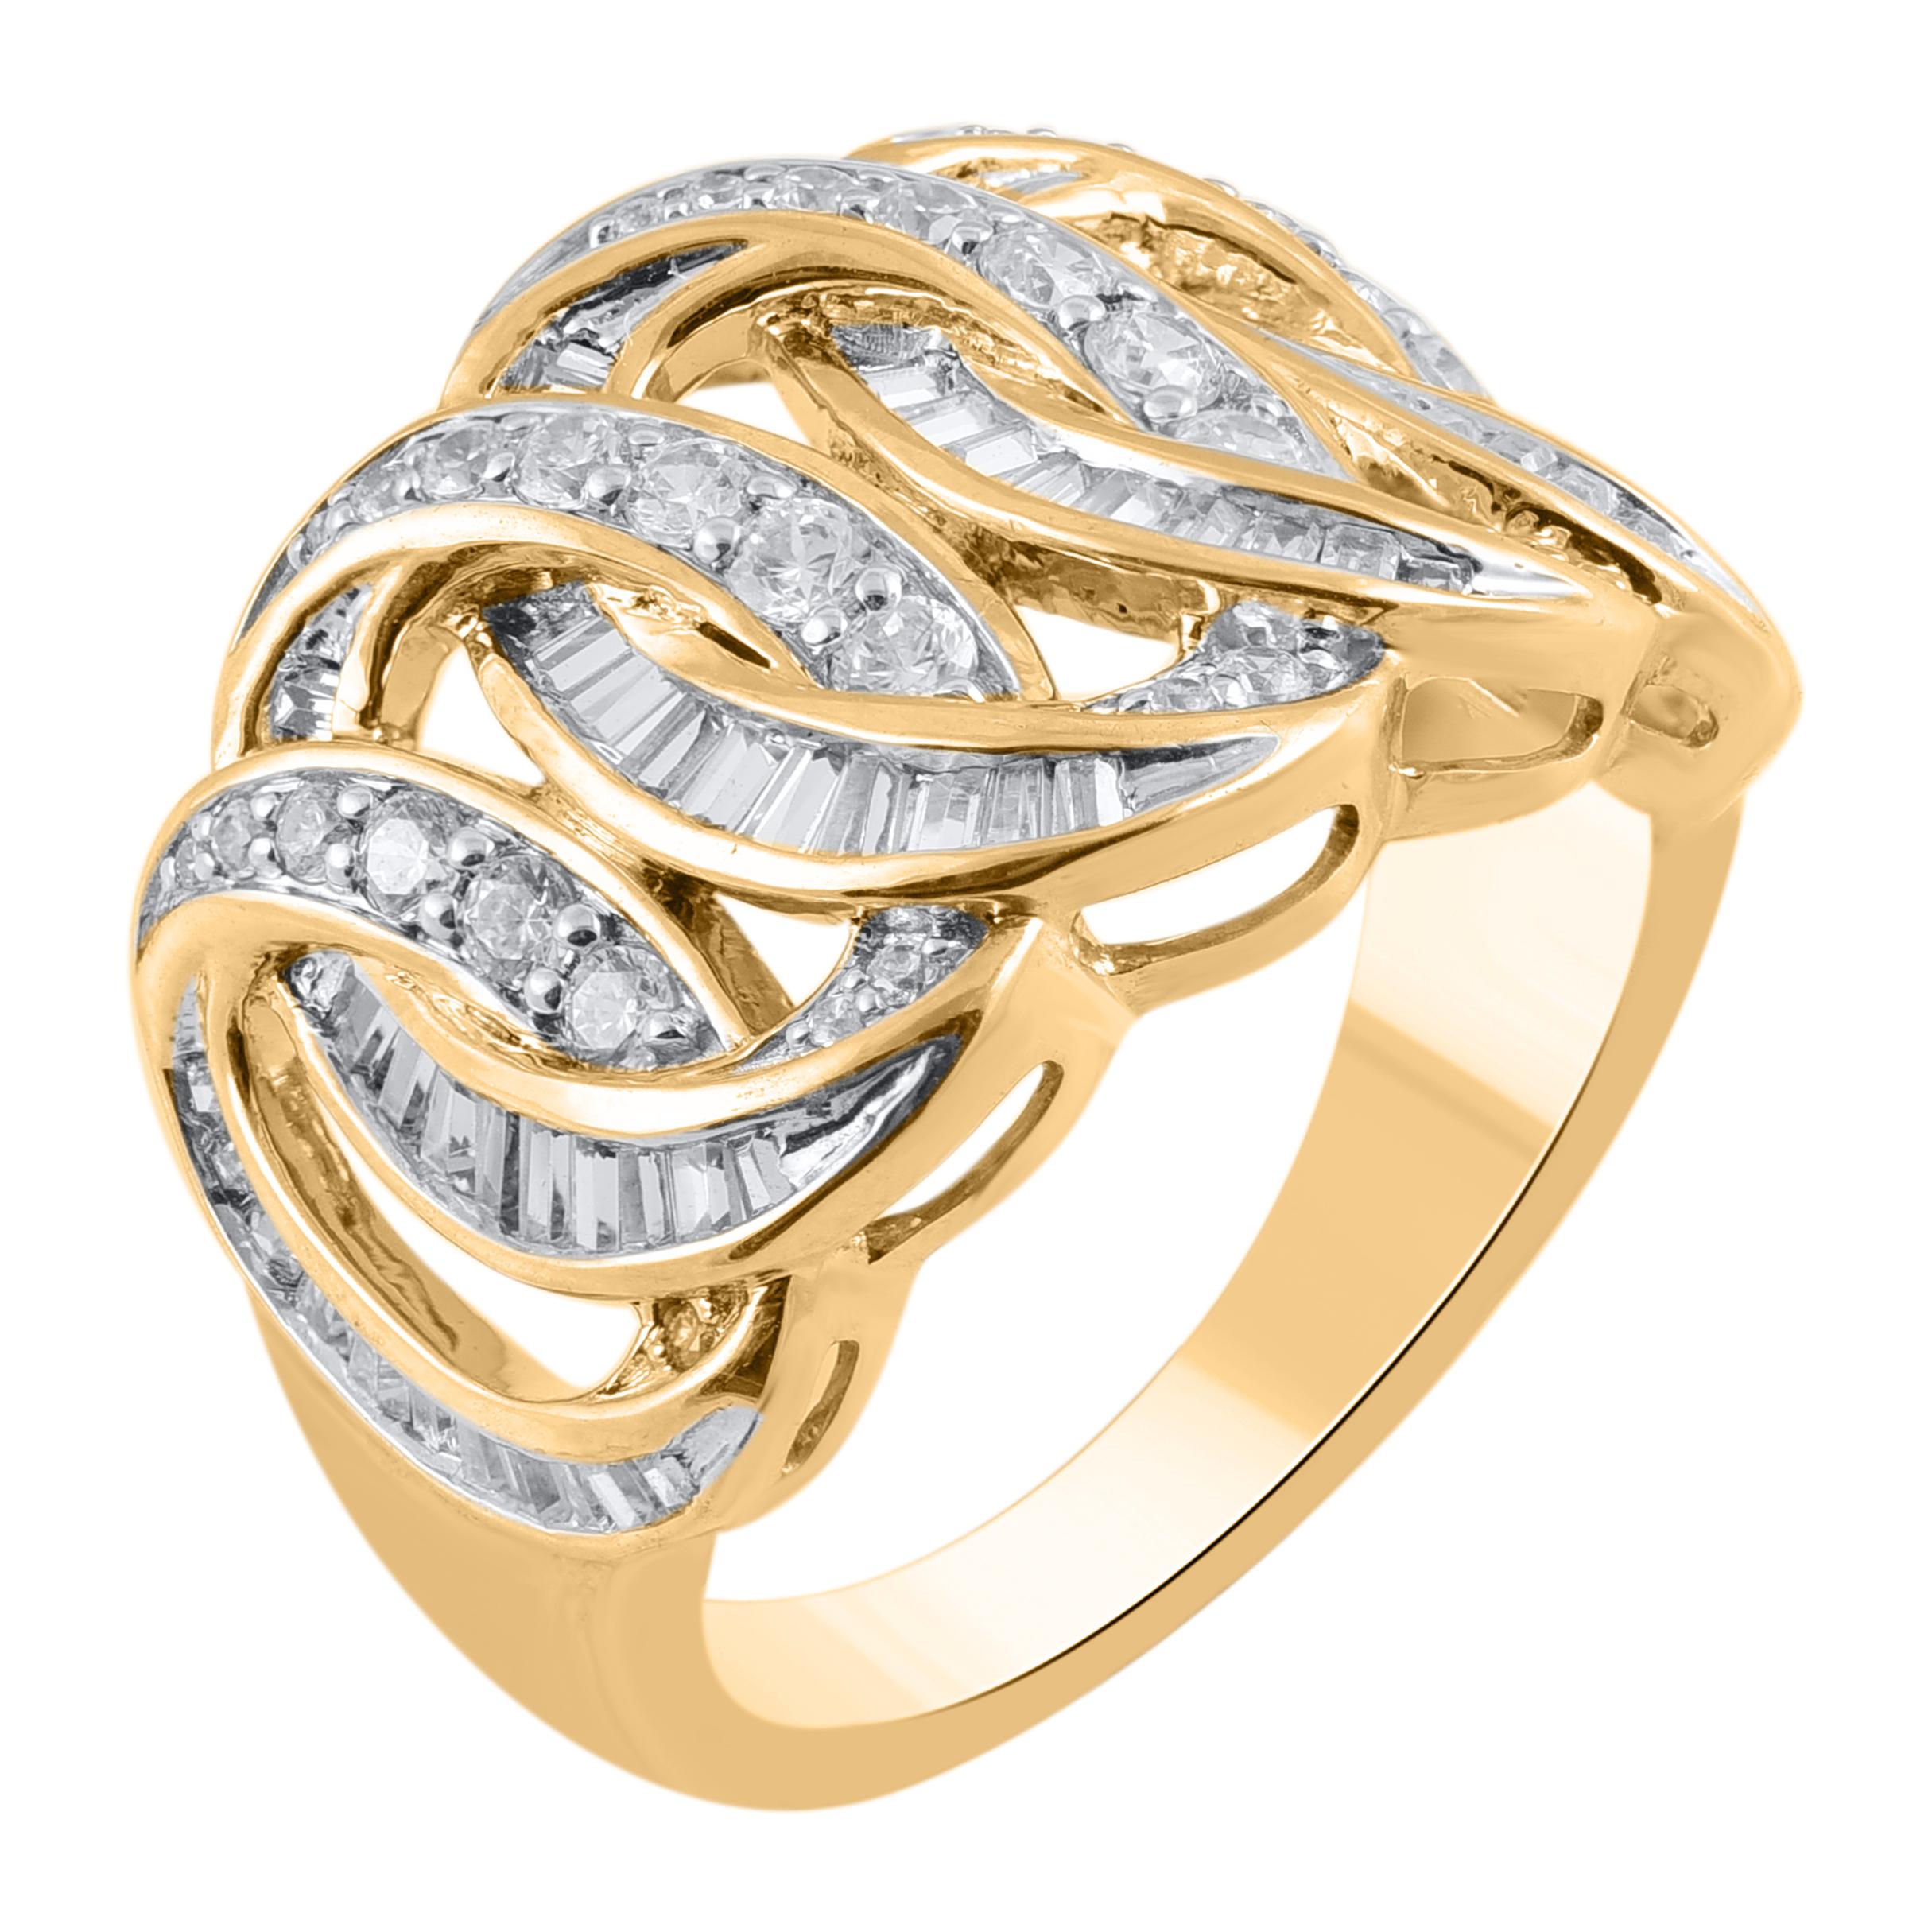 Apportez du charme à votre look avec cette bague à anneaux imbriqués en diamants. Cette bague est magnifiquement réalisée en or jaune 14 carats et sertie de 98 diamants de taille brillant, diamants ronds de taille simple et diamants baguettes en